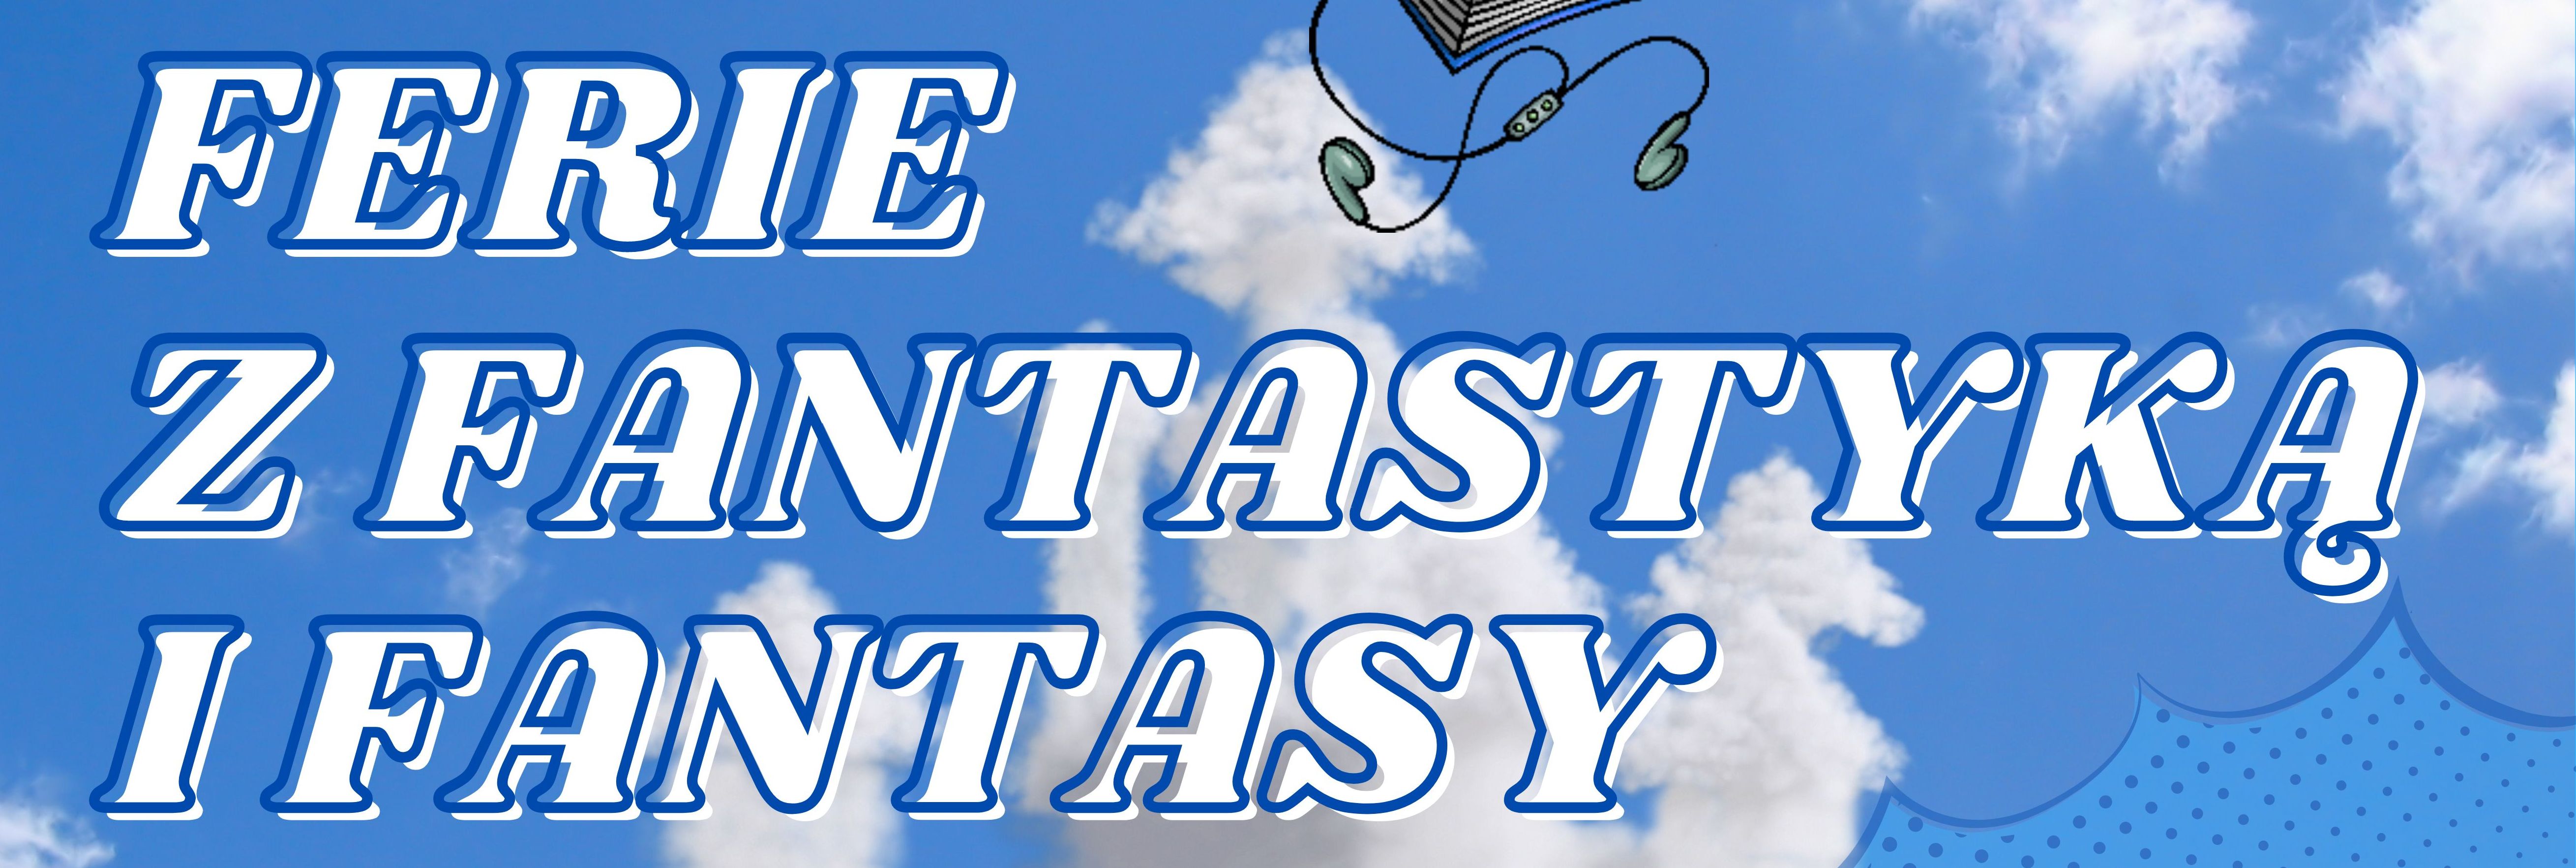 ferie z fantastyką i fantasy 001